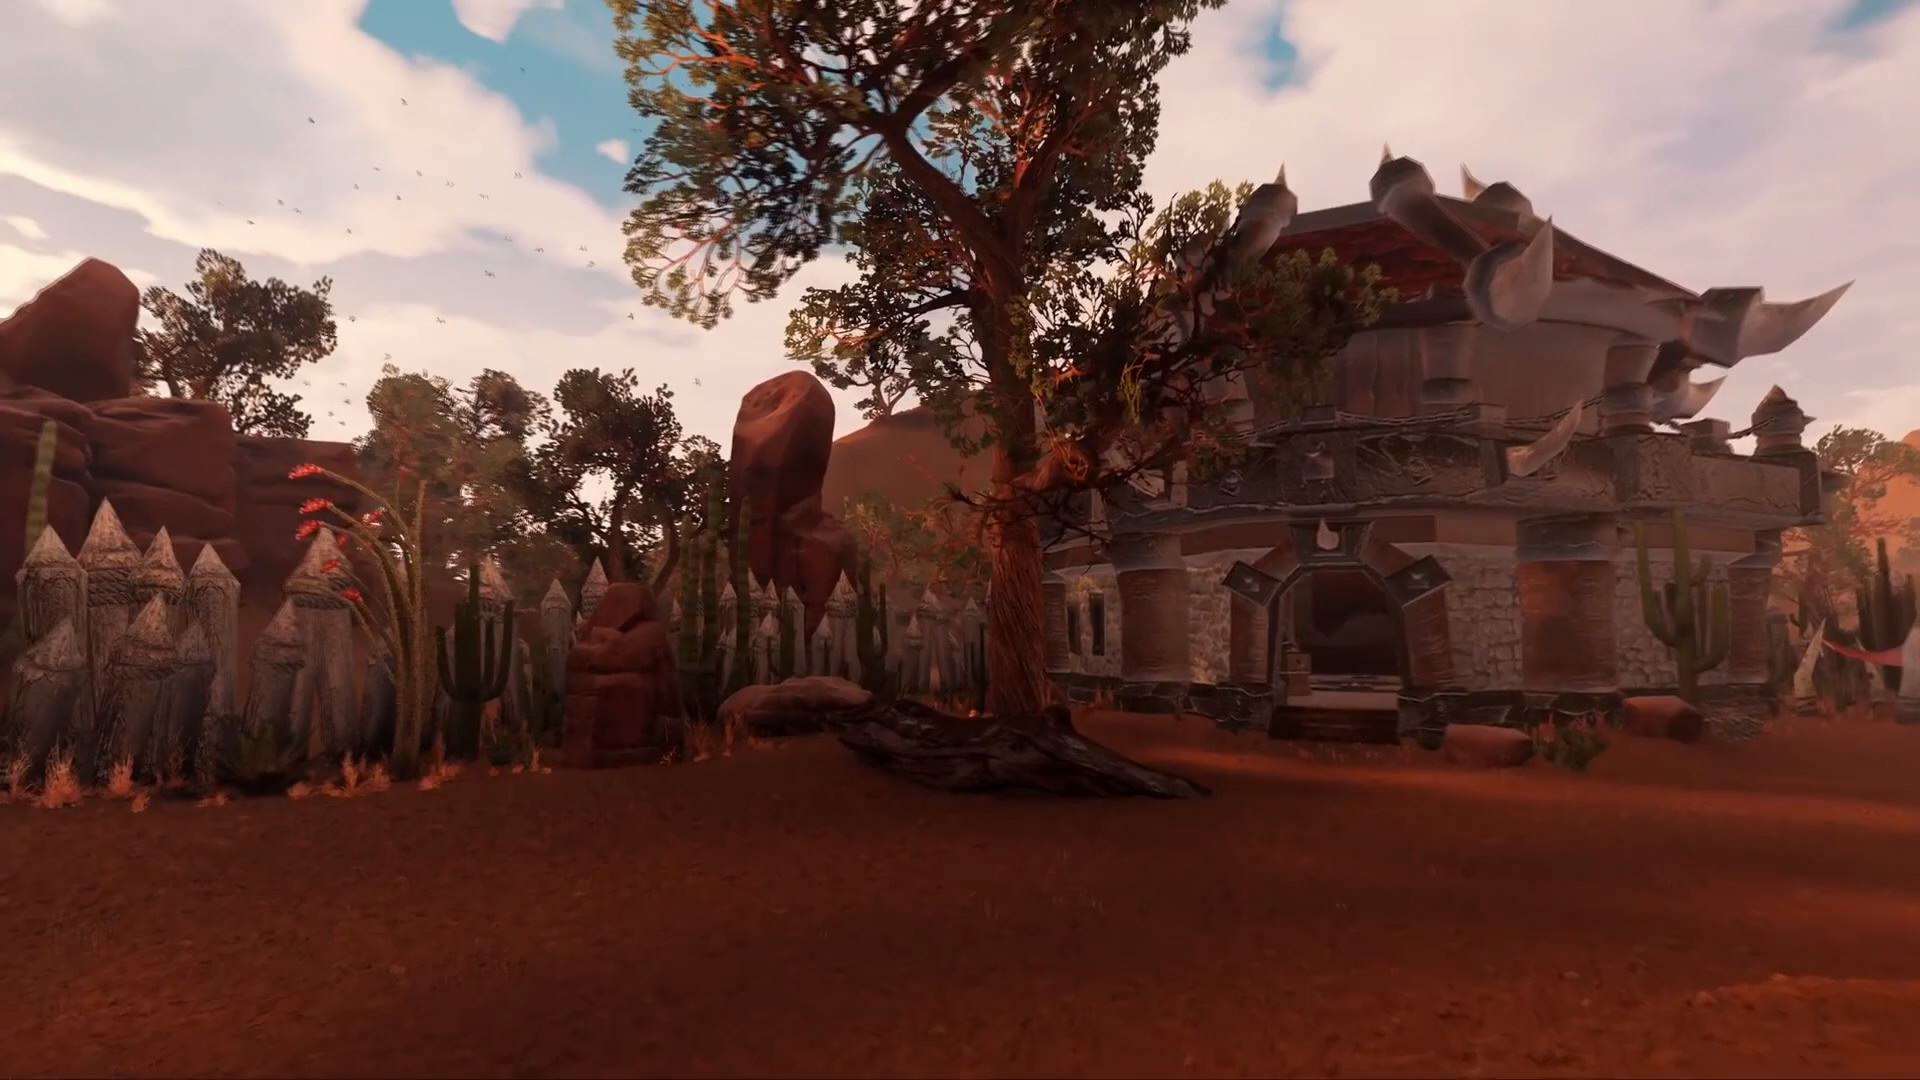 玩家用虚幻4重制《魔兽世界》场景 风景美丽效果出色